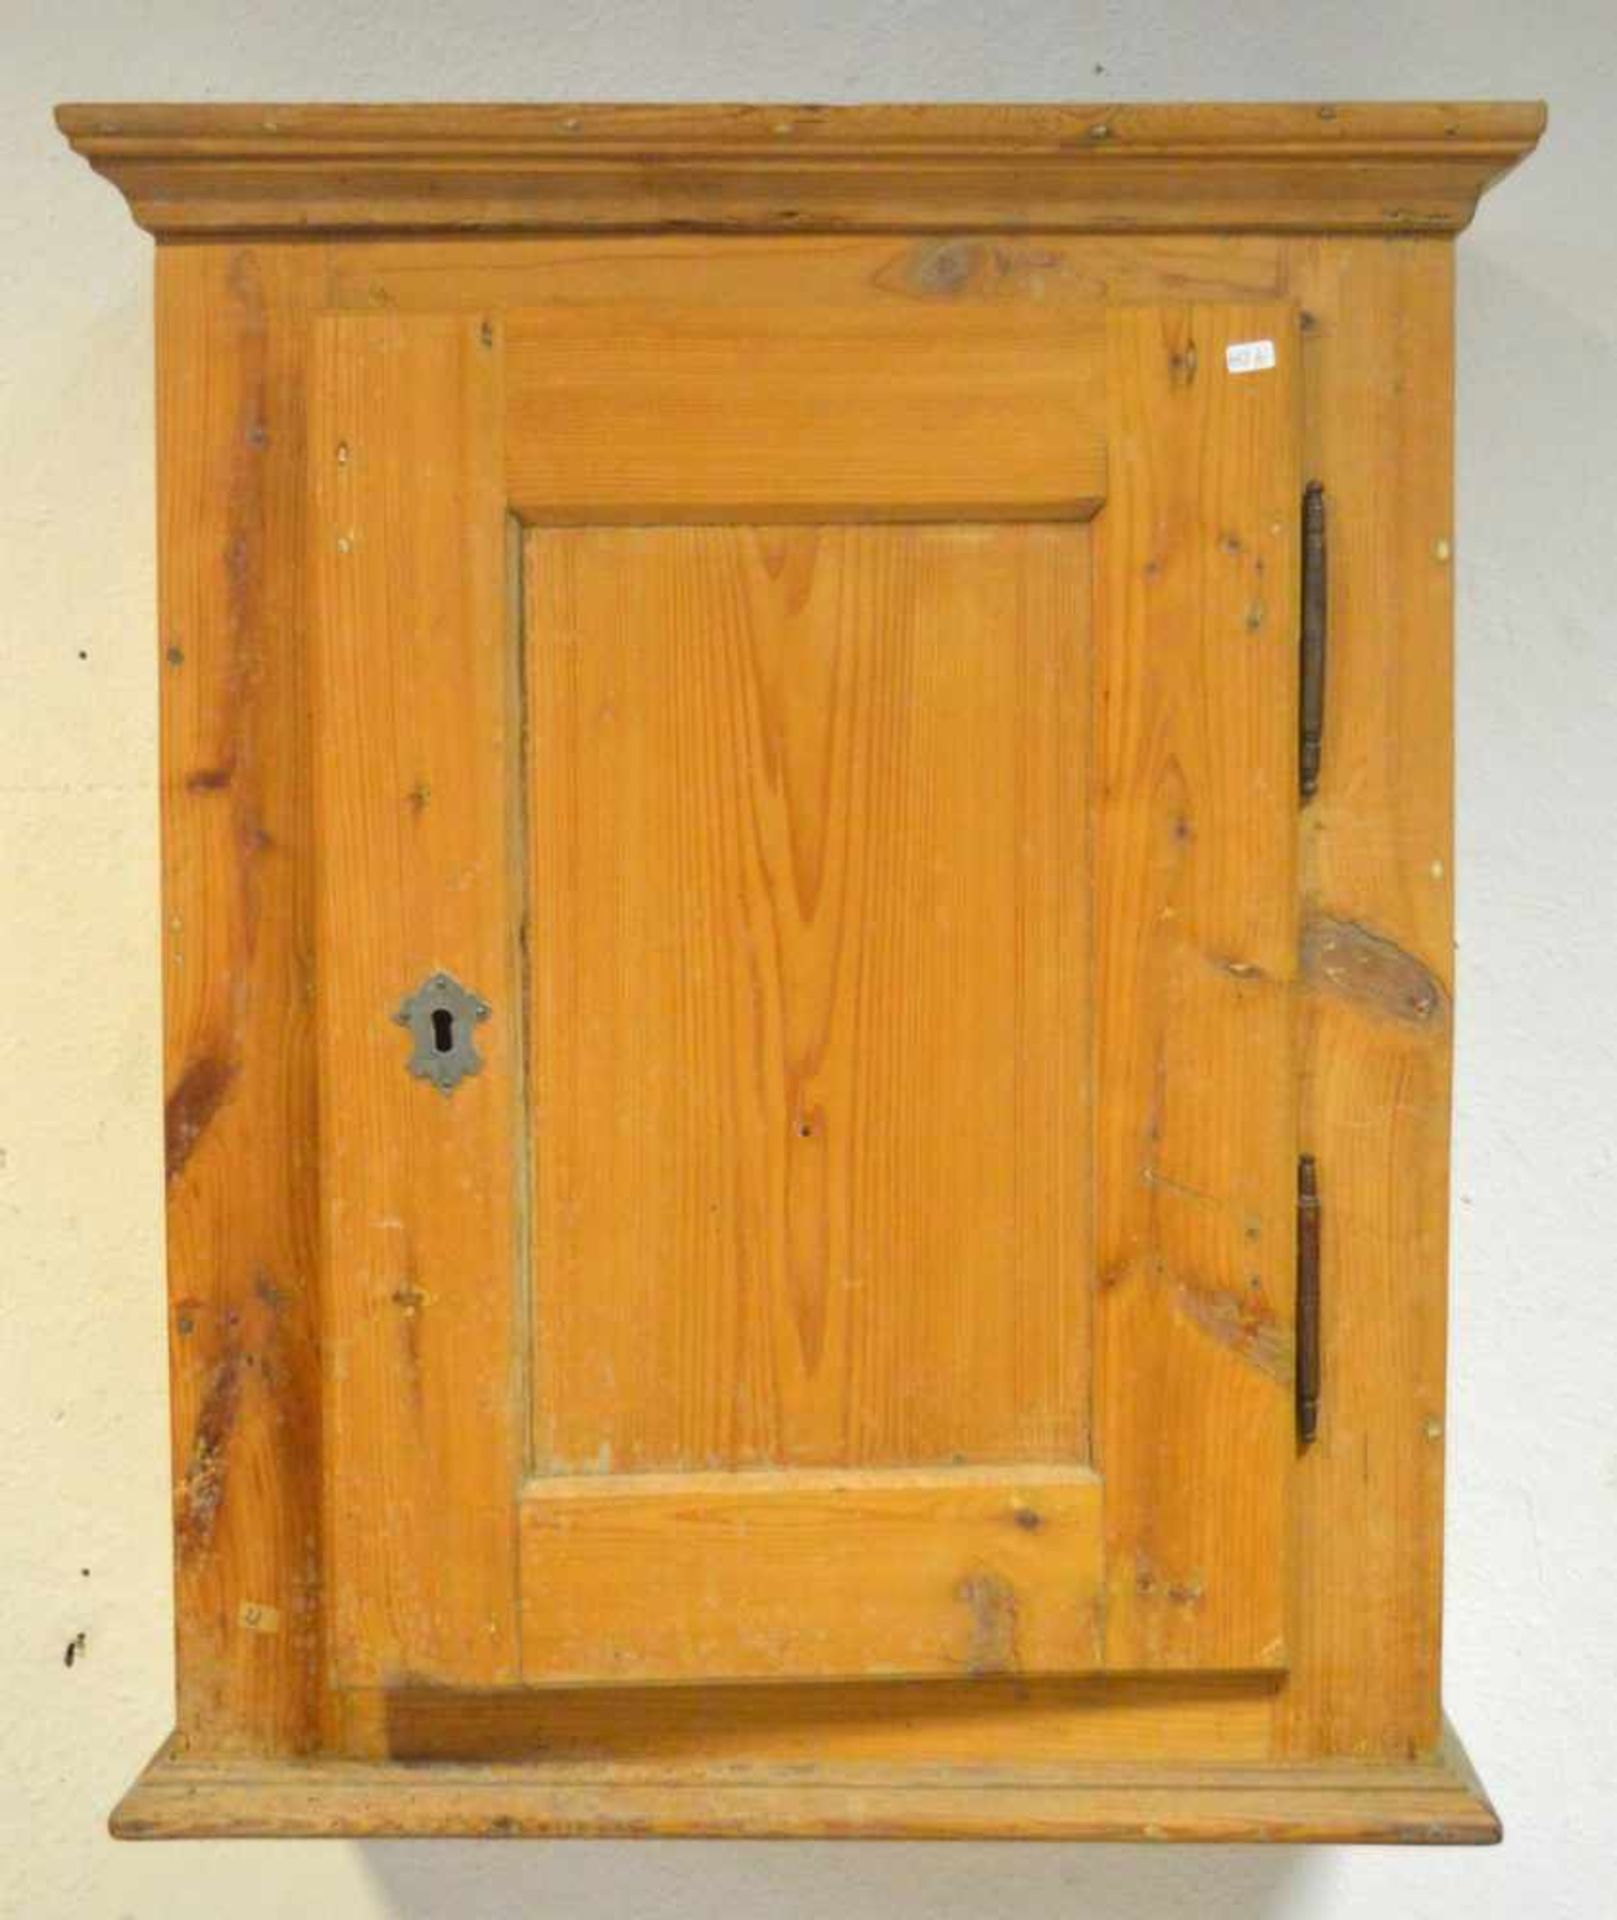 Biedermeier-Hängeschrank Weichholz, rechteckiges Hochformat, eine kassettierte Tür, Fuß- und